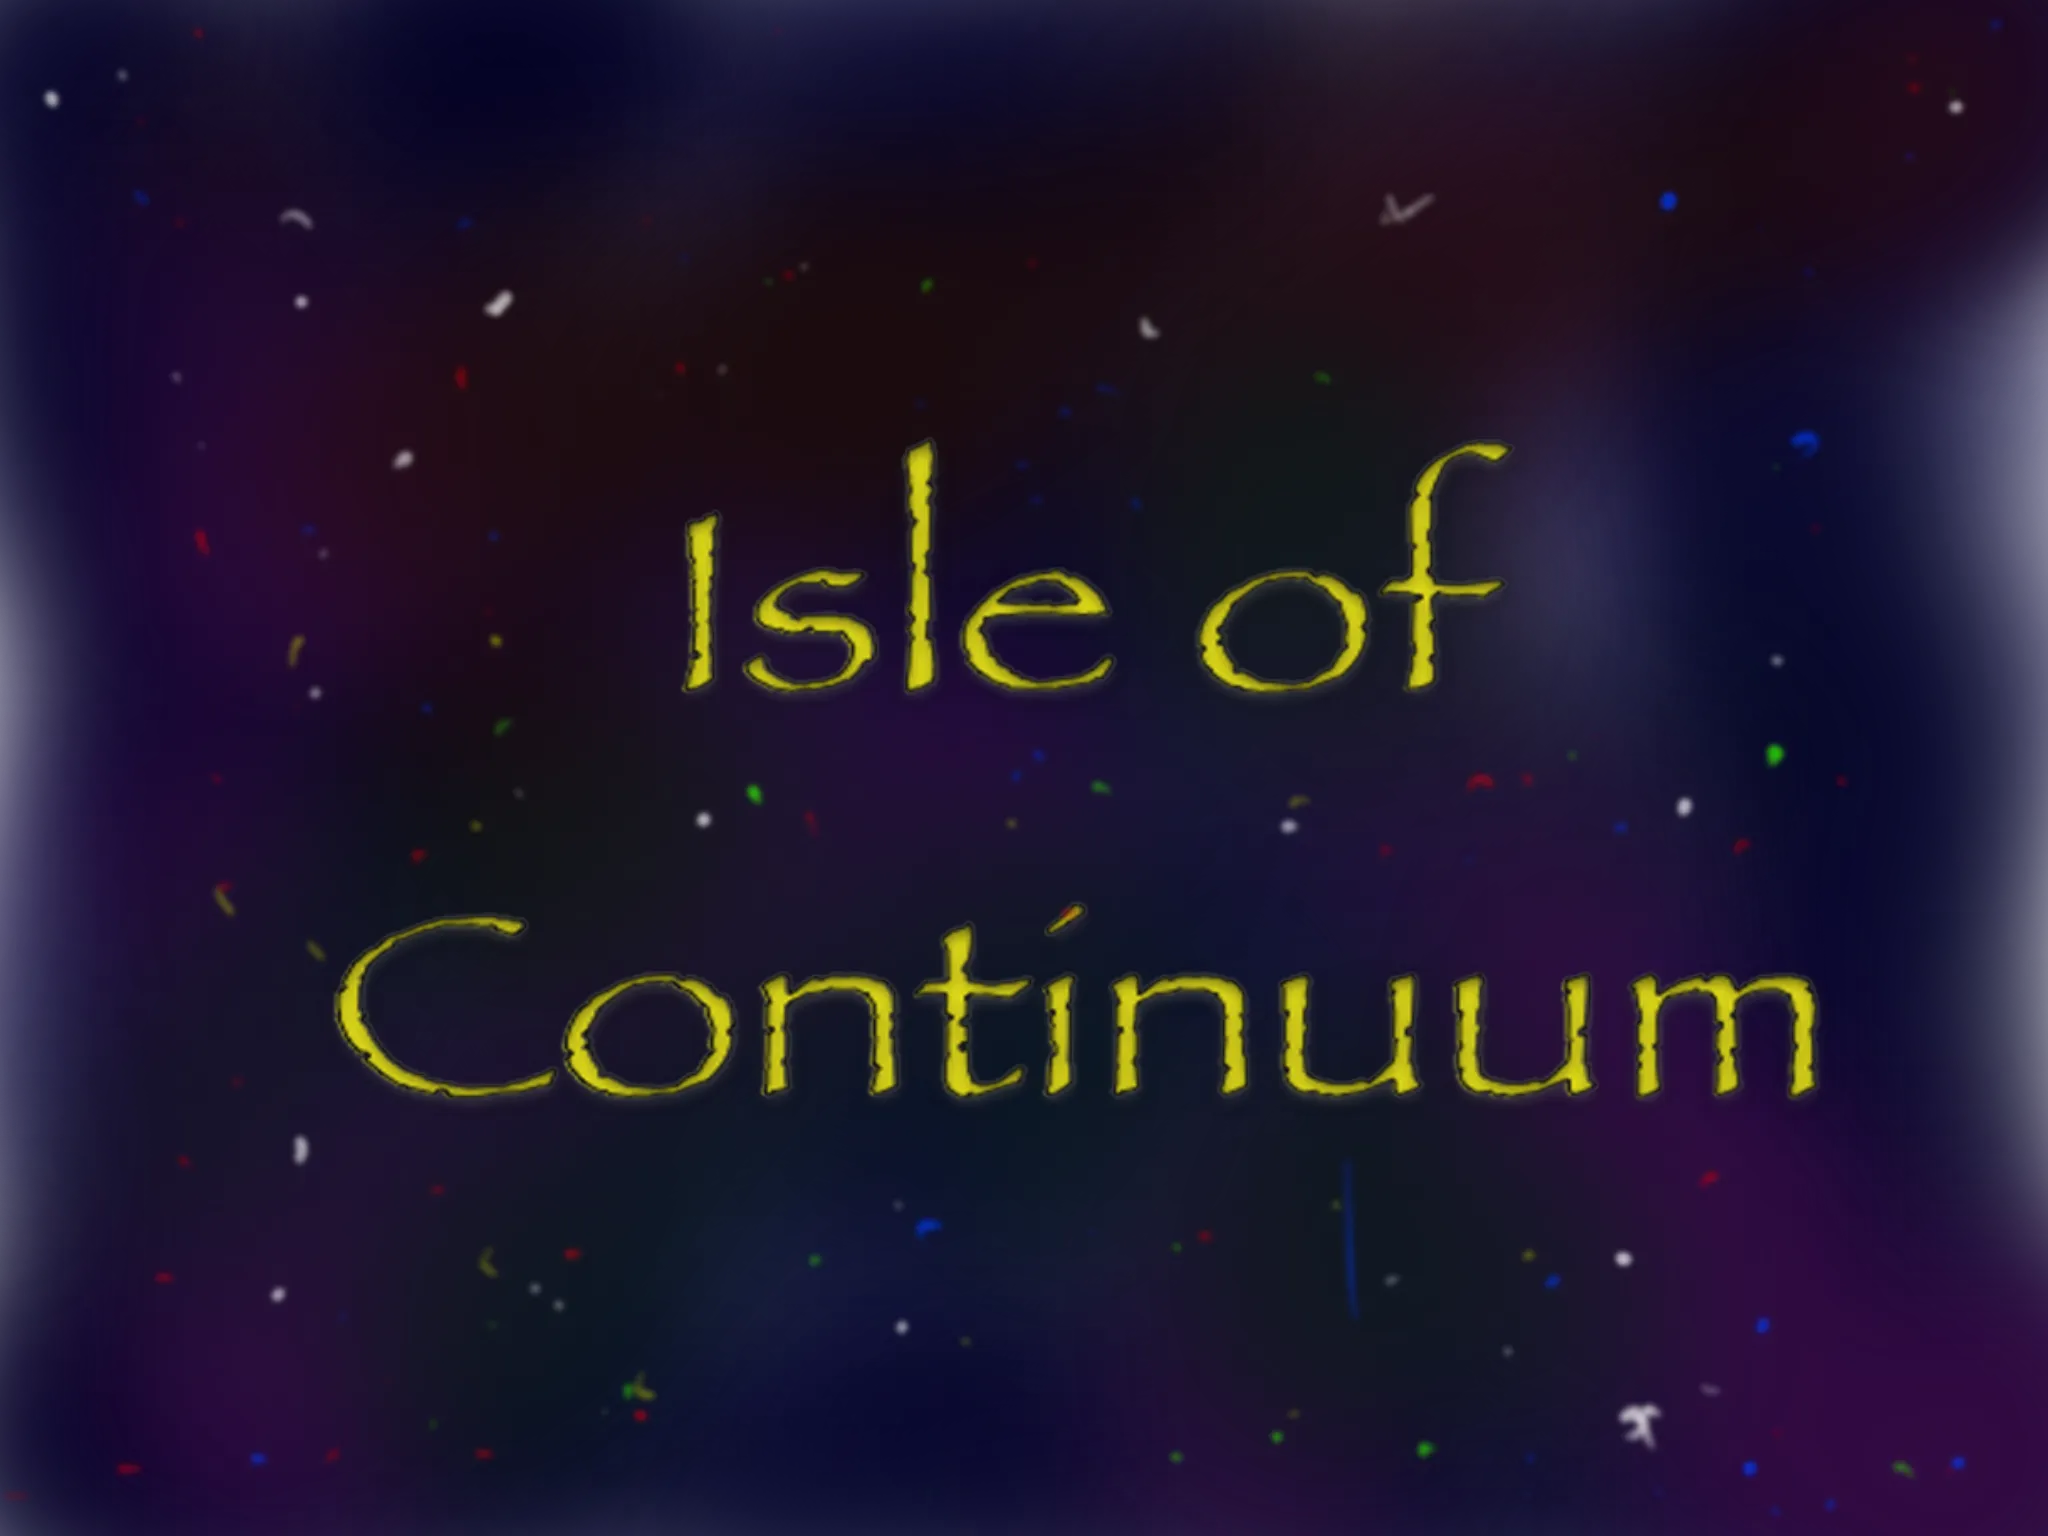 isle of continuum